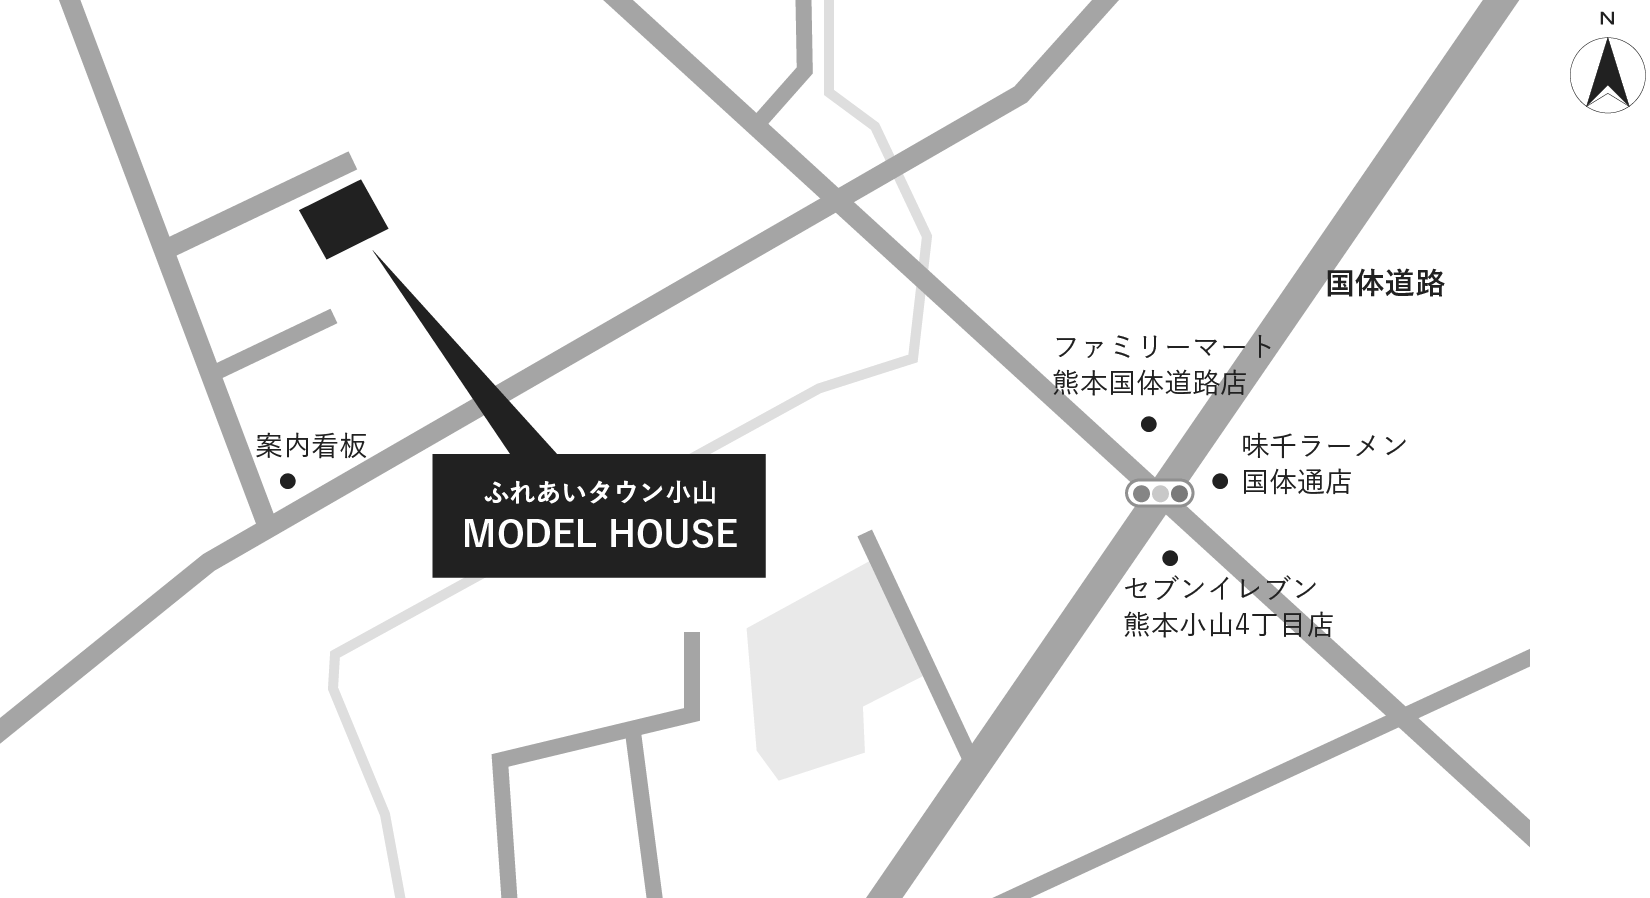 ふれあいタウン小山 MODEL HOUSE